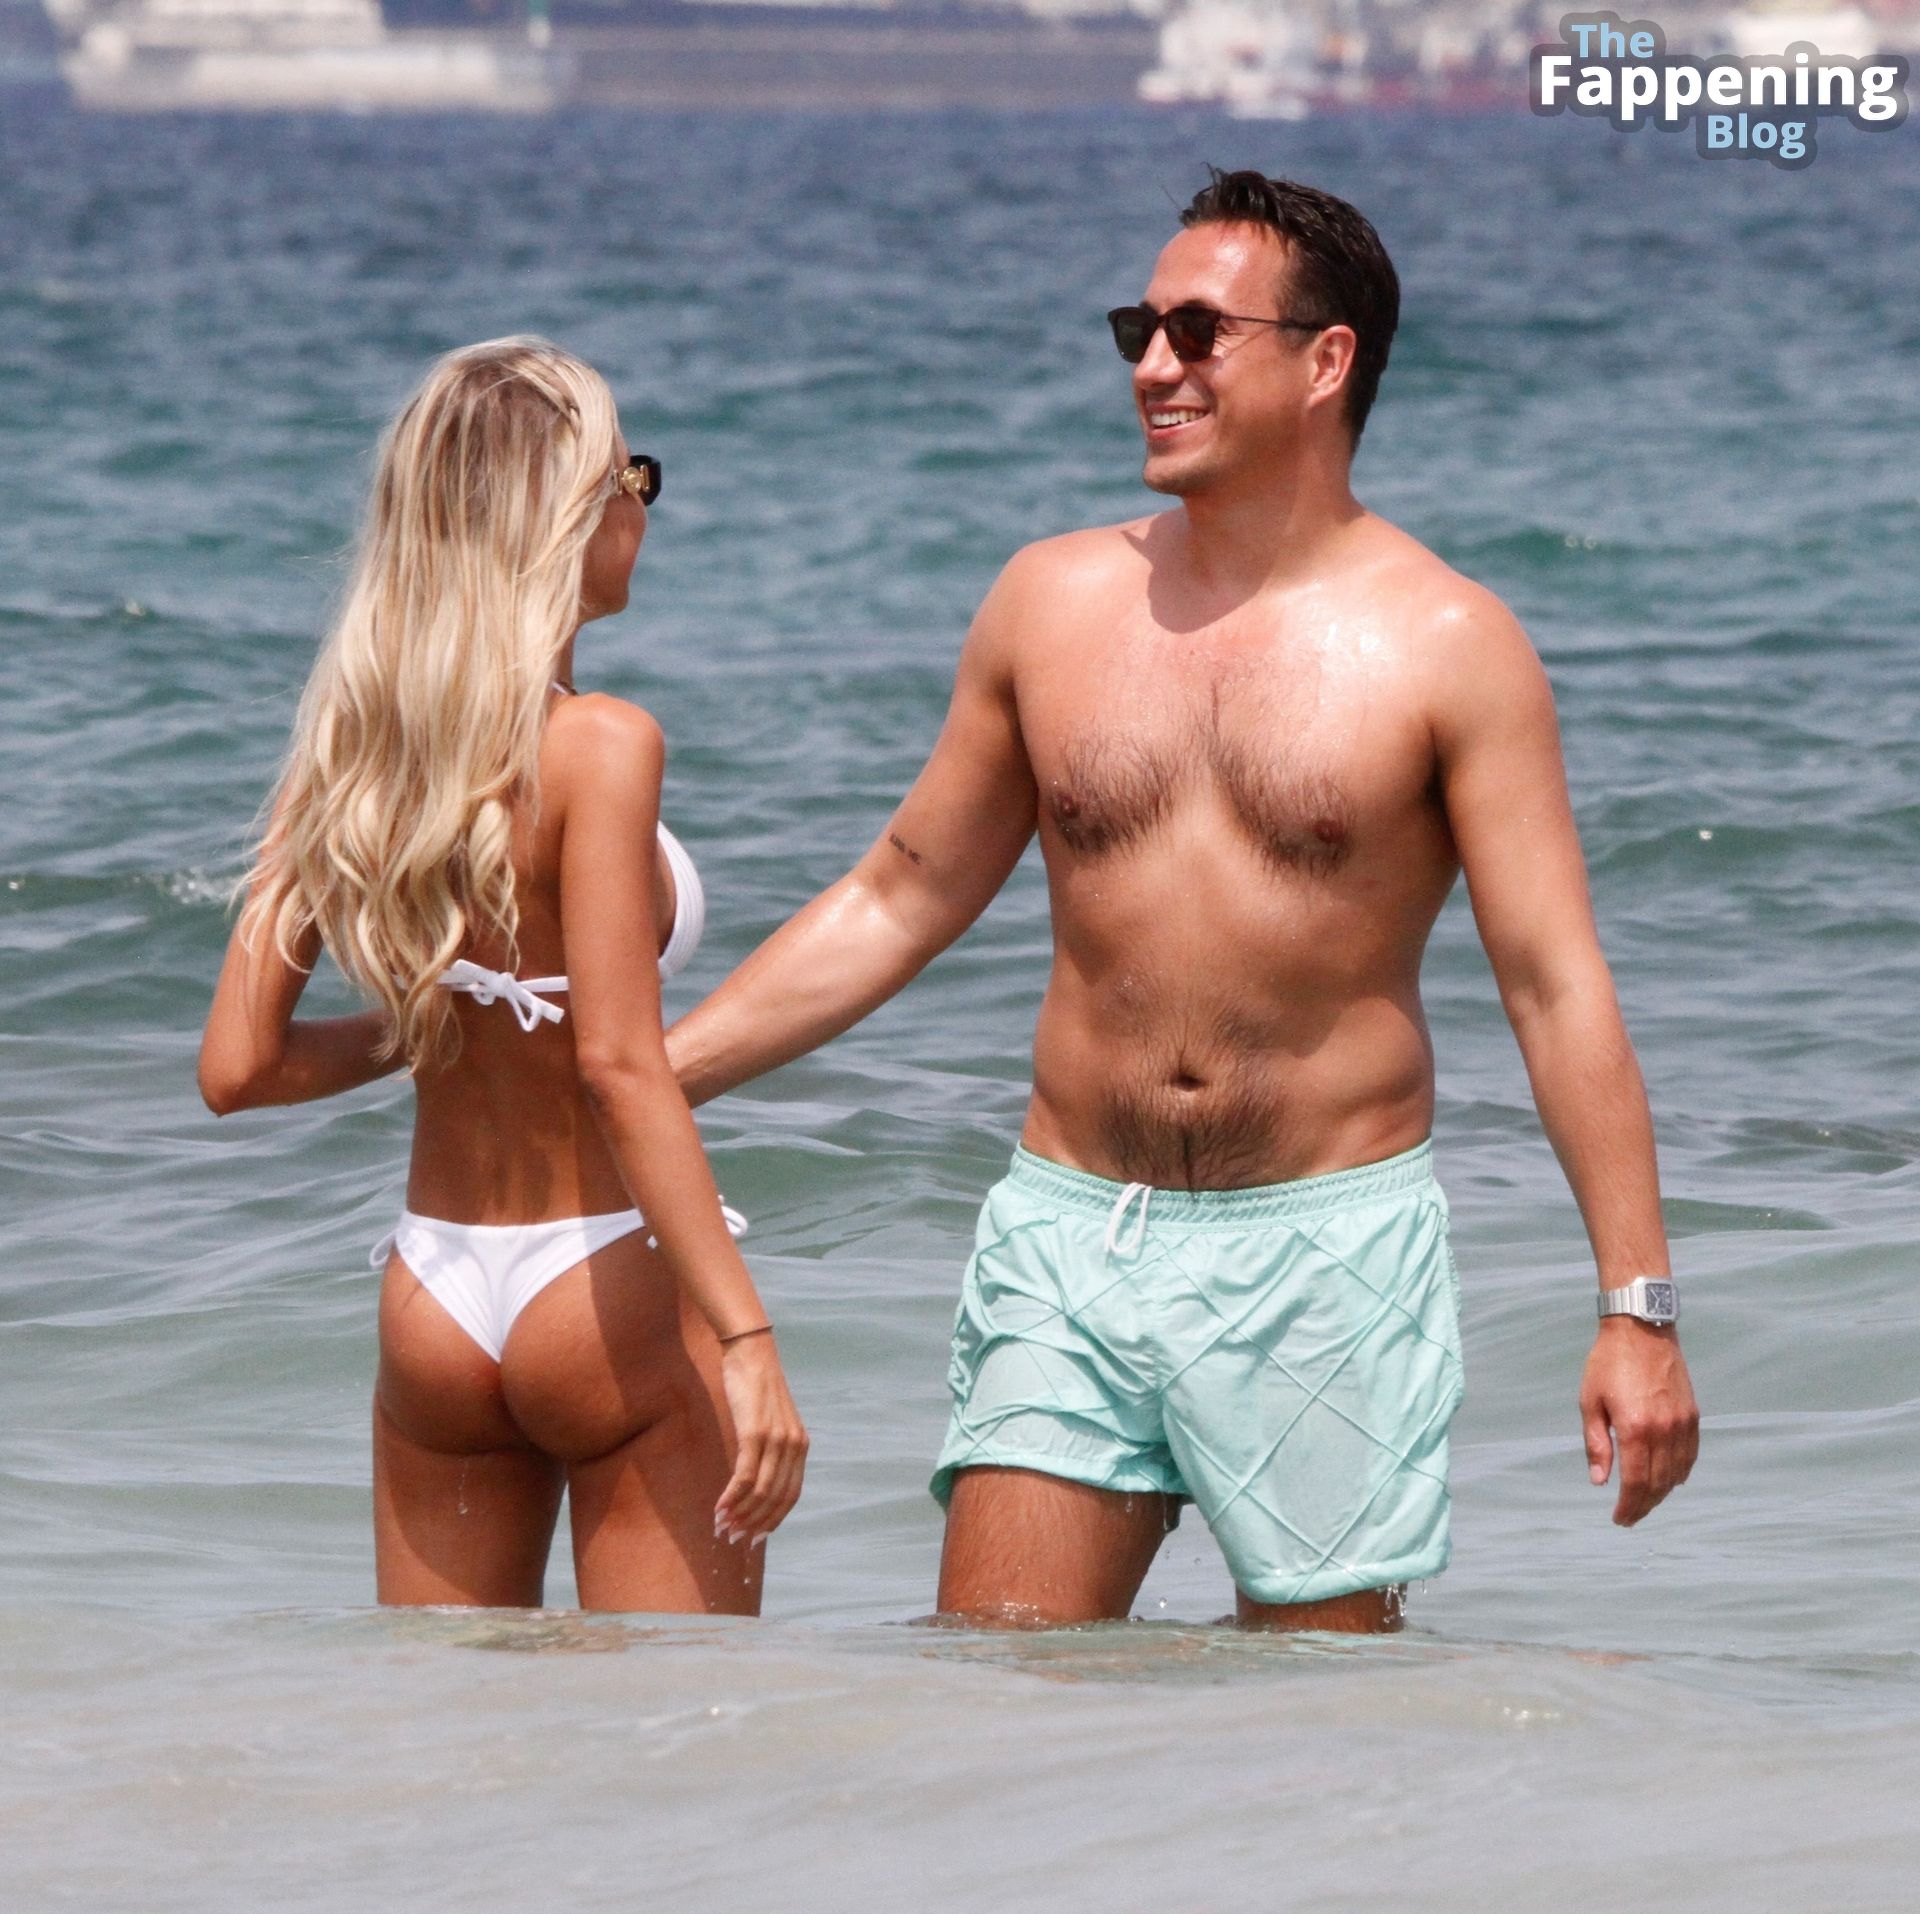 Jotti Verbruggen Enjoys Her Summer Holidays with Her New Boyfriend in Ibiza (34 Photos)